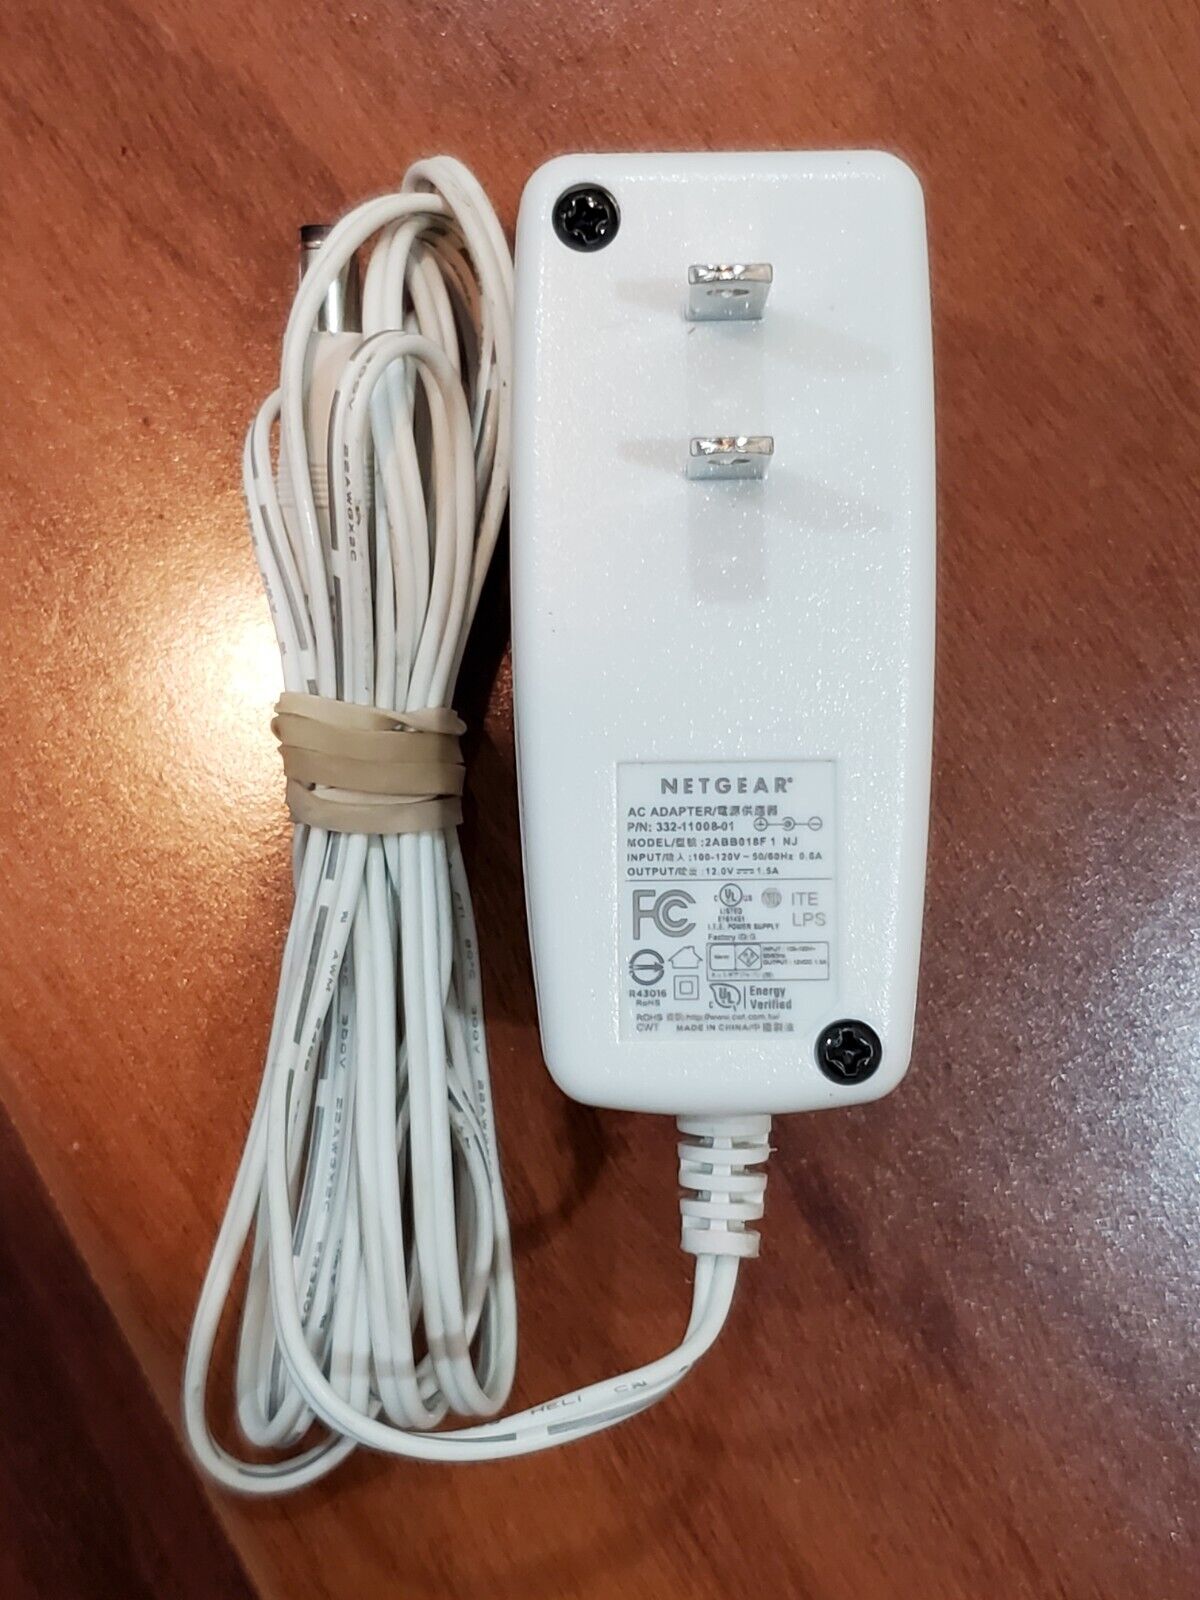 NETGEAR 2ABB018F1 12V 1.5A Genuine Original AC Power Adapter Charger - White